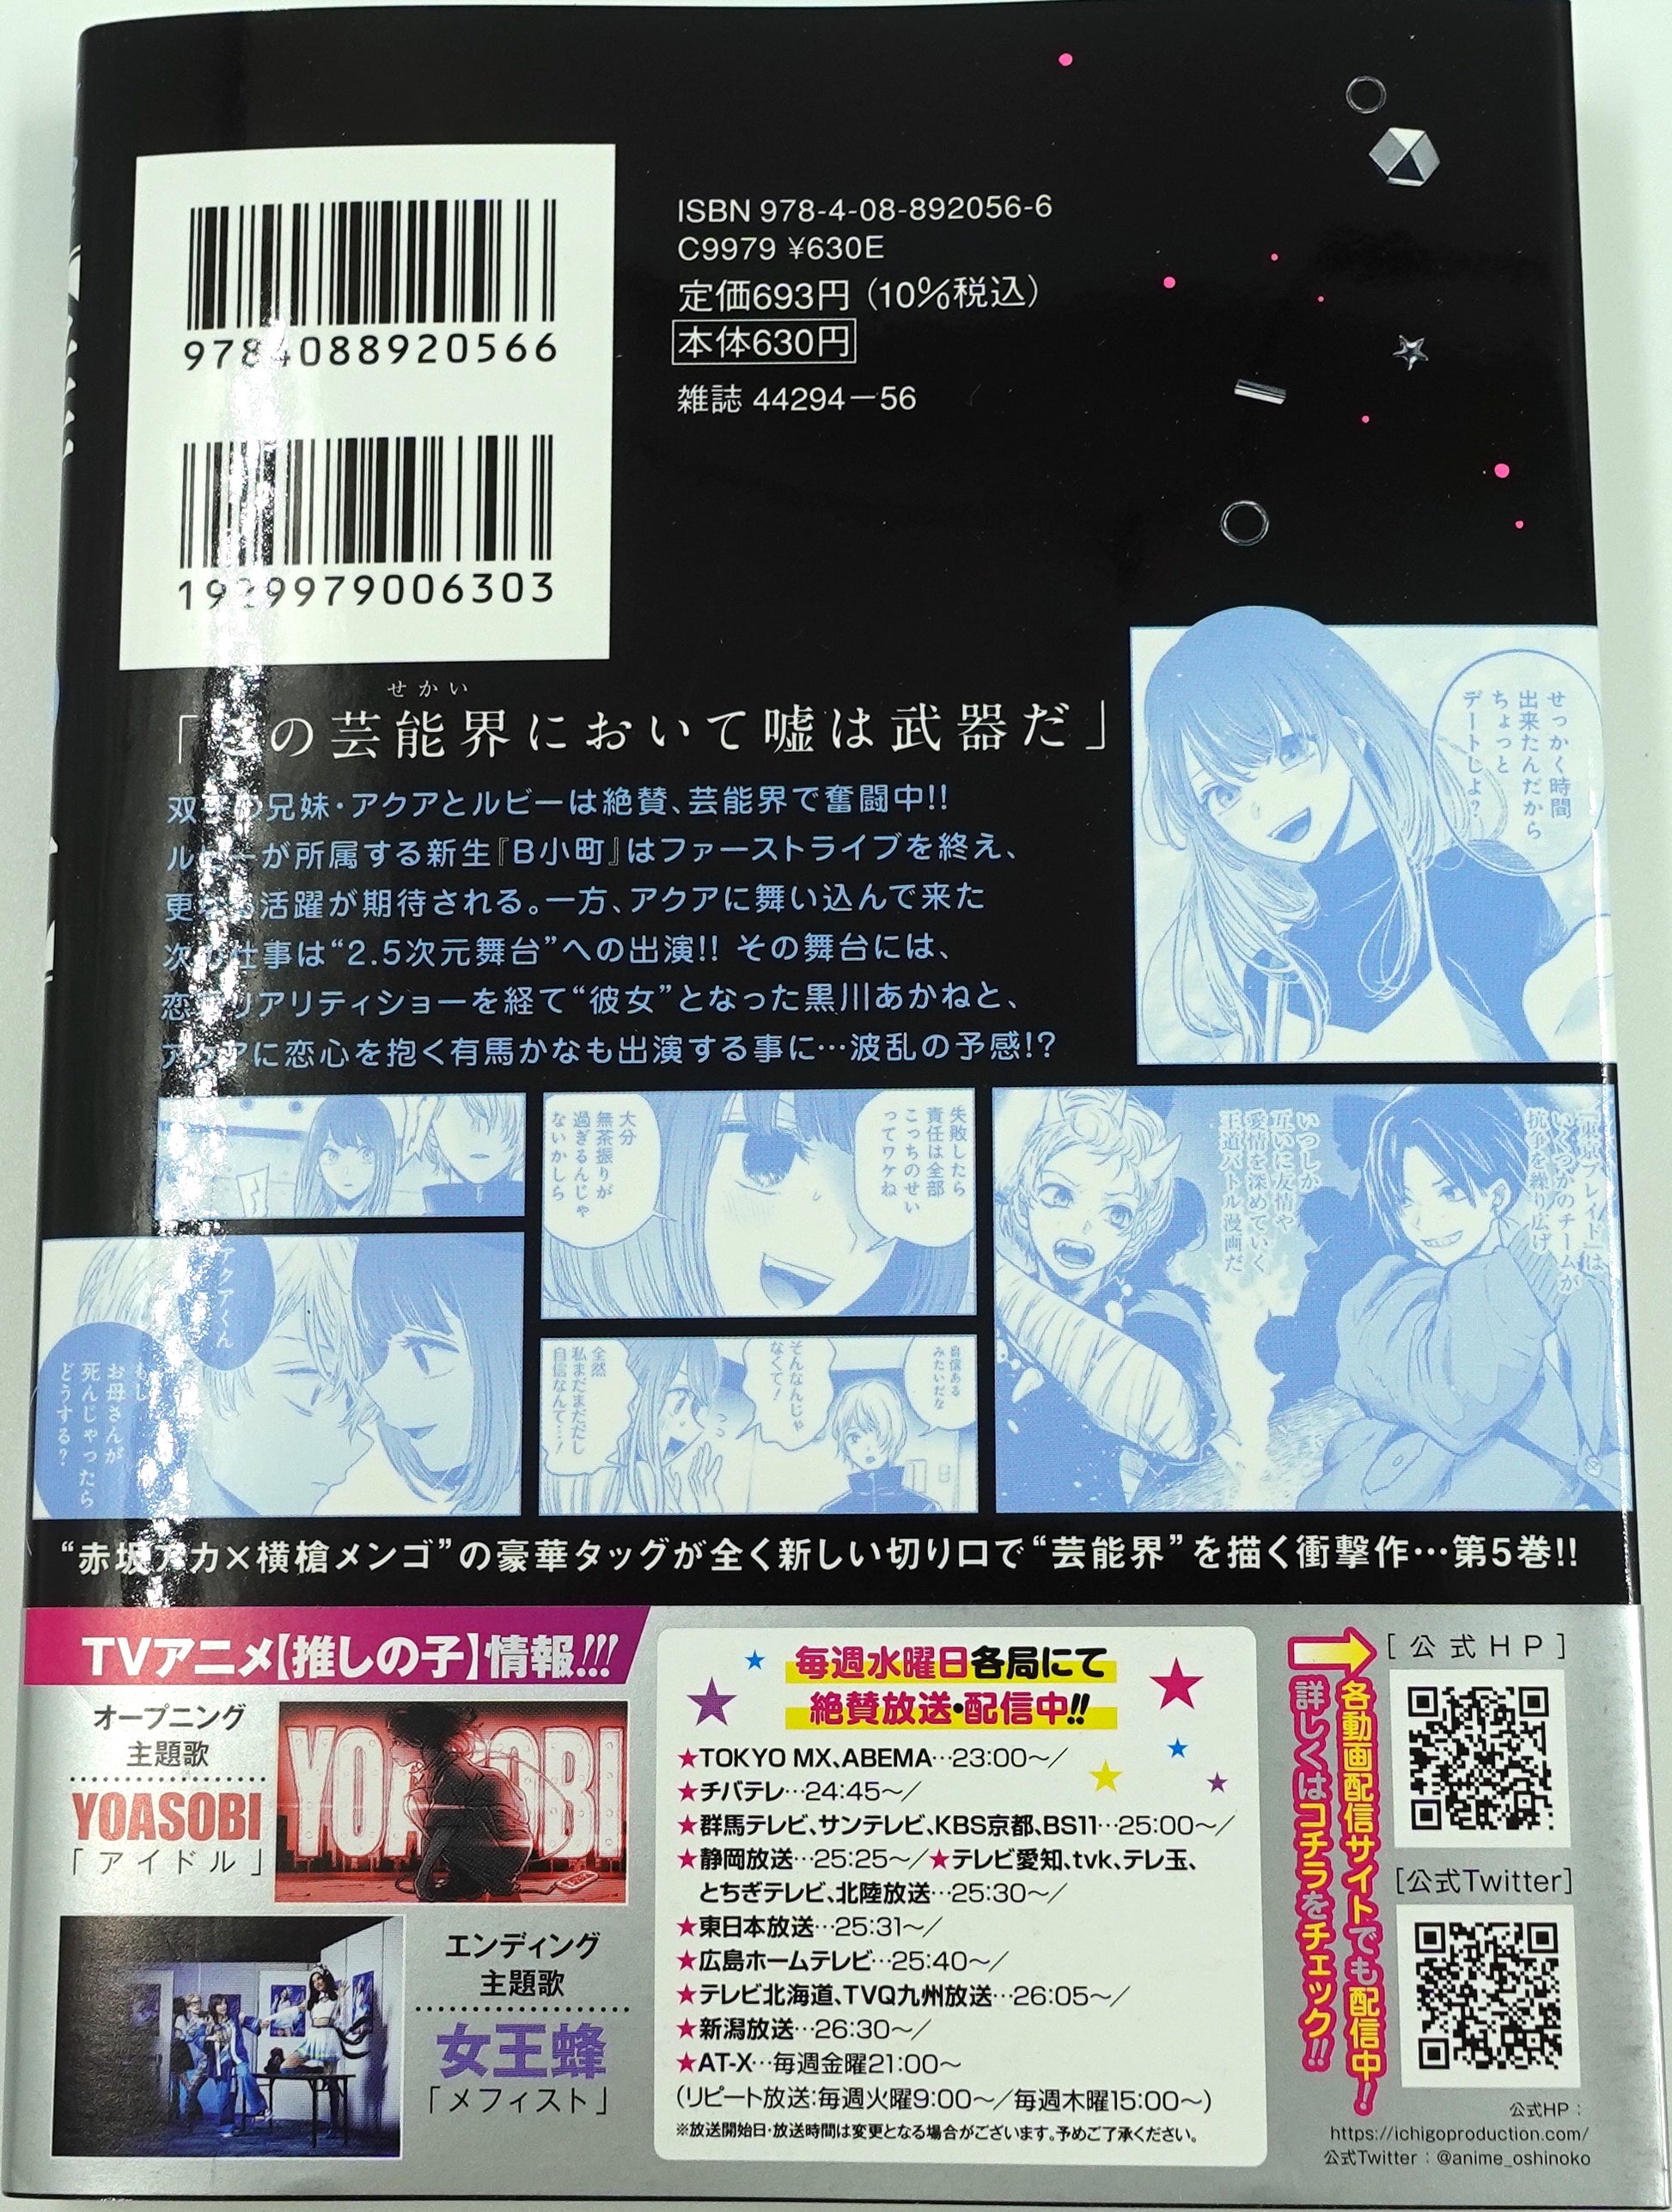 Manga Mogura RE on X: Oshi no ko volume 5 by Aka Akasaka, Mengo  Yokoyari.  / X